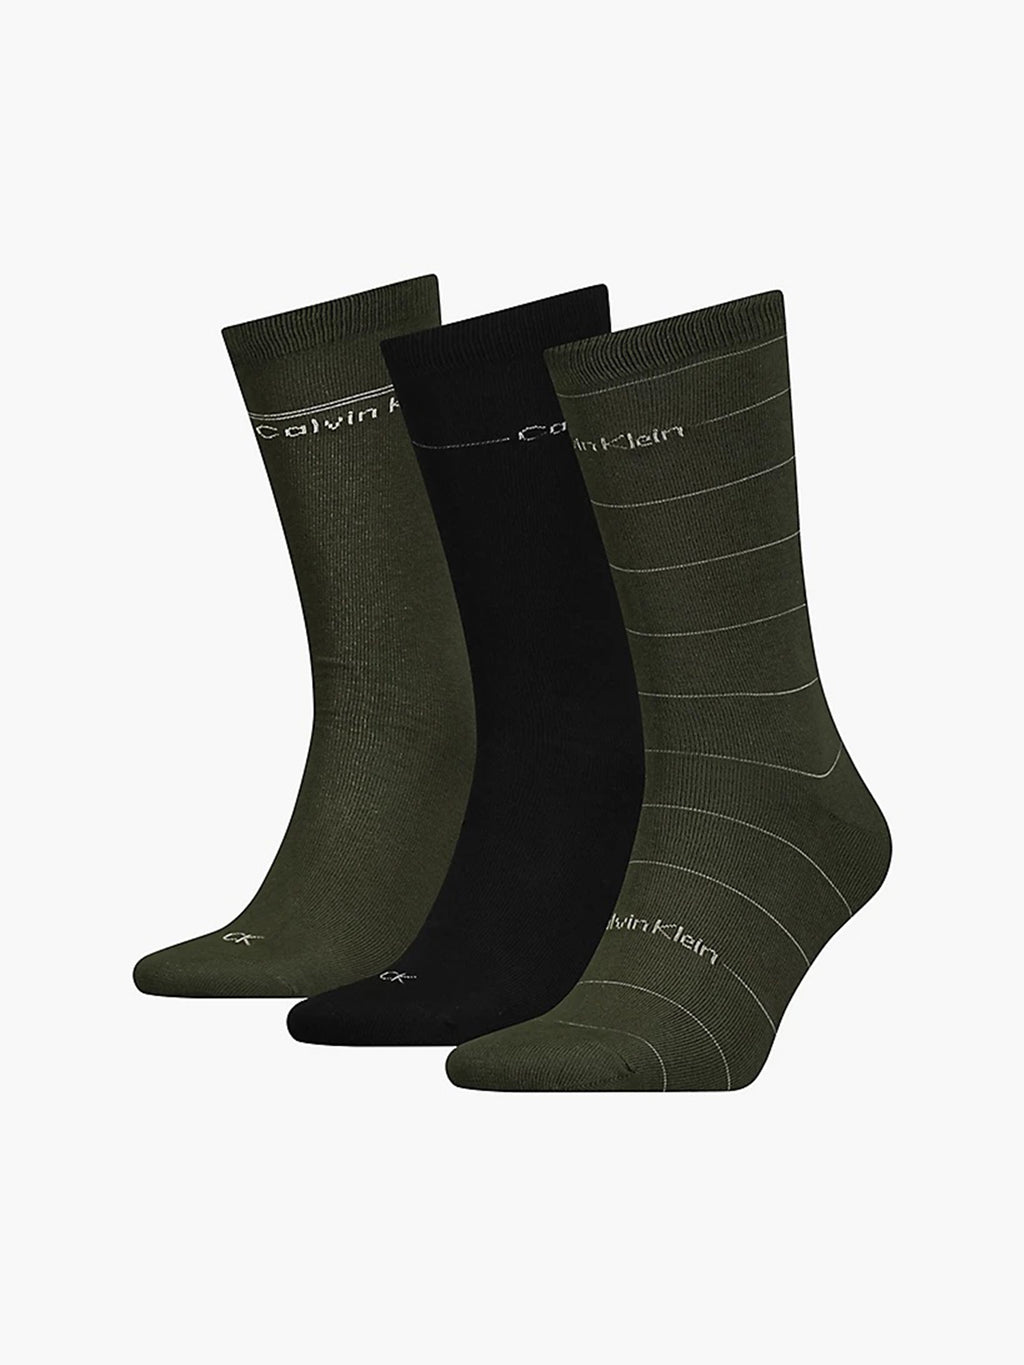 ck-socks-4-pack-green-black-701219837